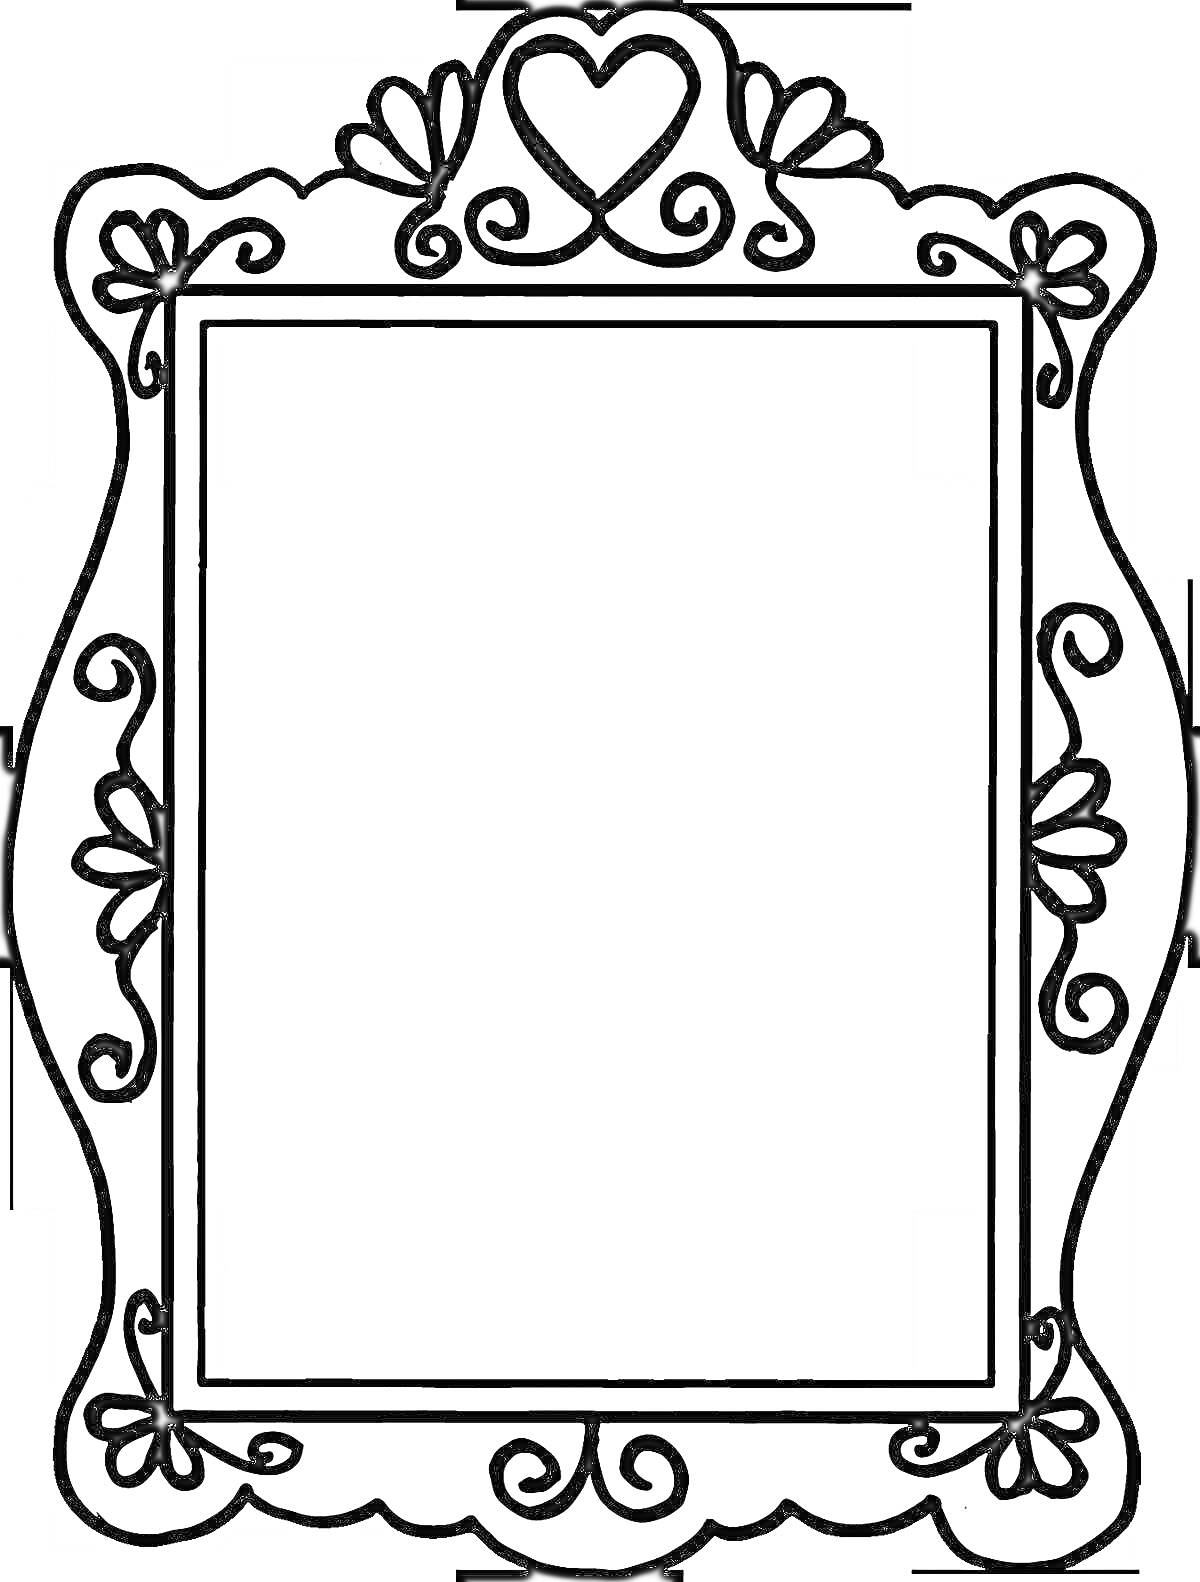 Раскраска Зеркало с витиеватыми узорами и декоративными элементами